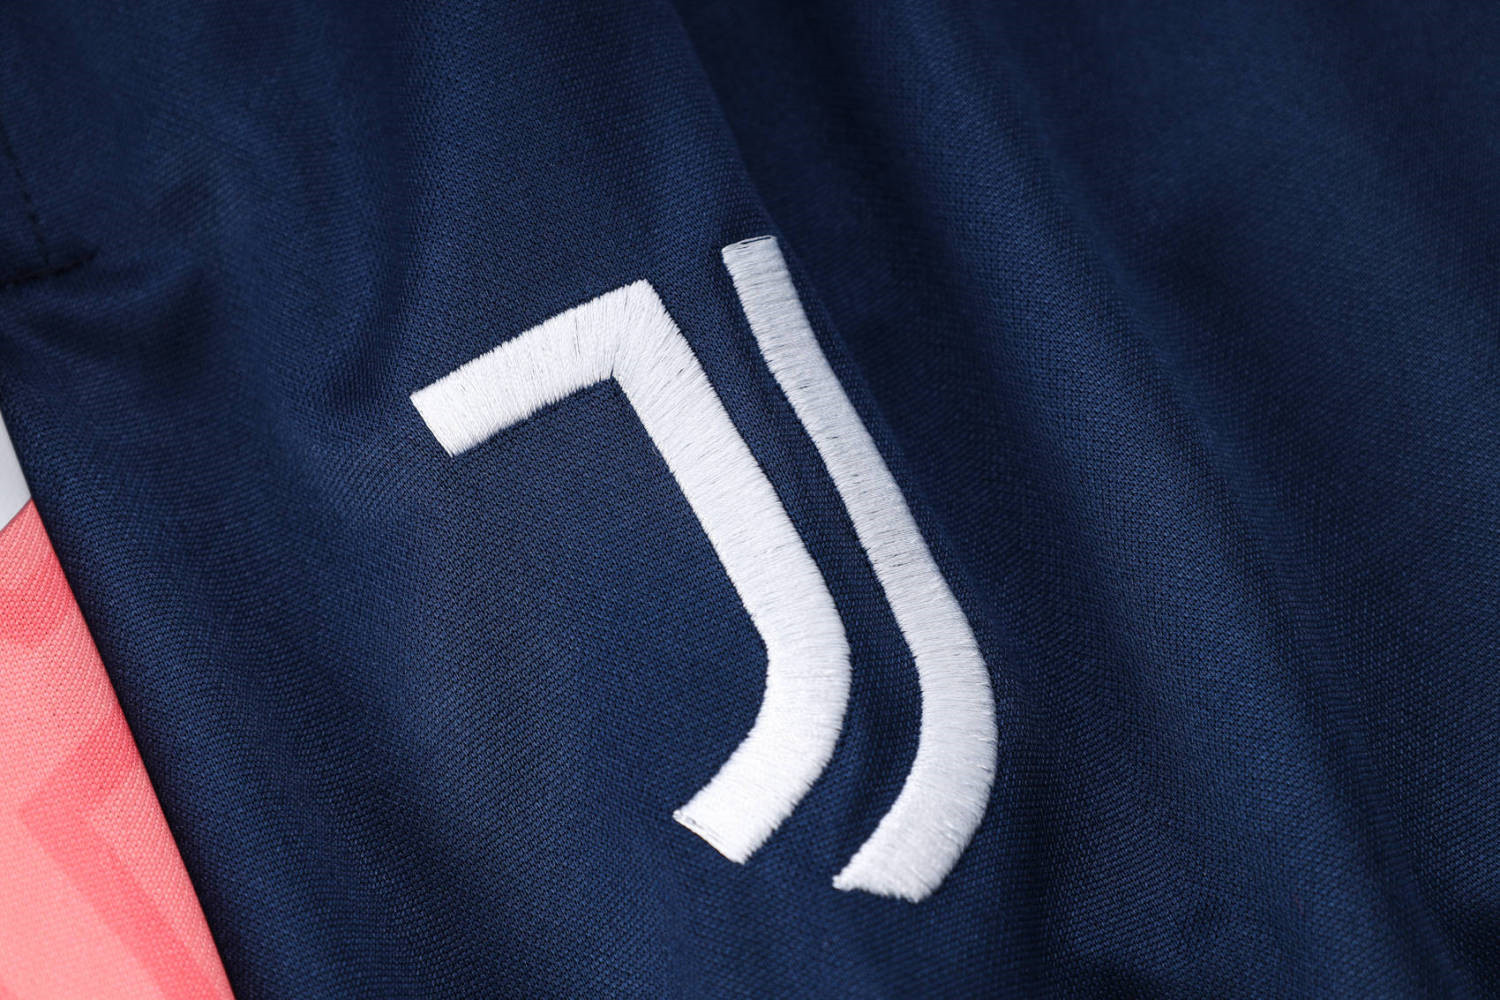 Juventus Soccer Training Suit Replica Royal 2022/23 Mens